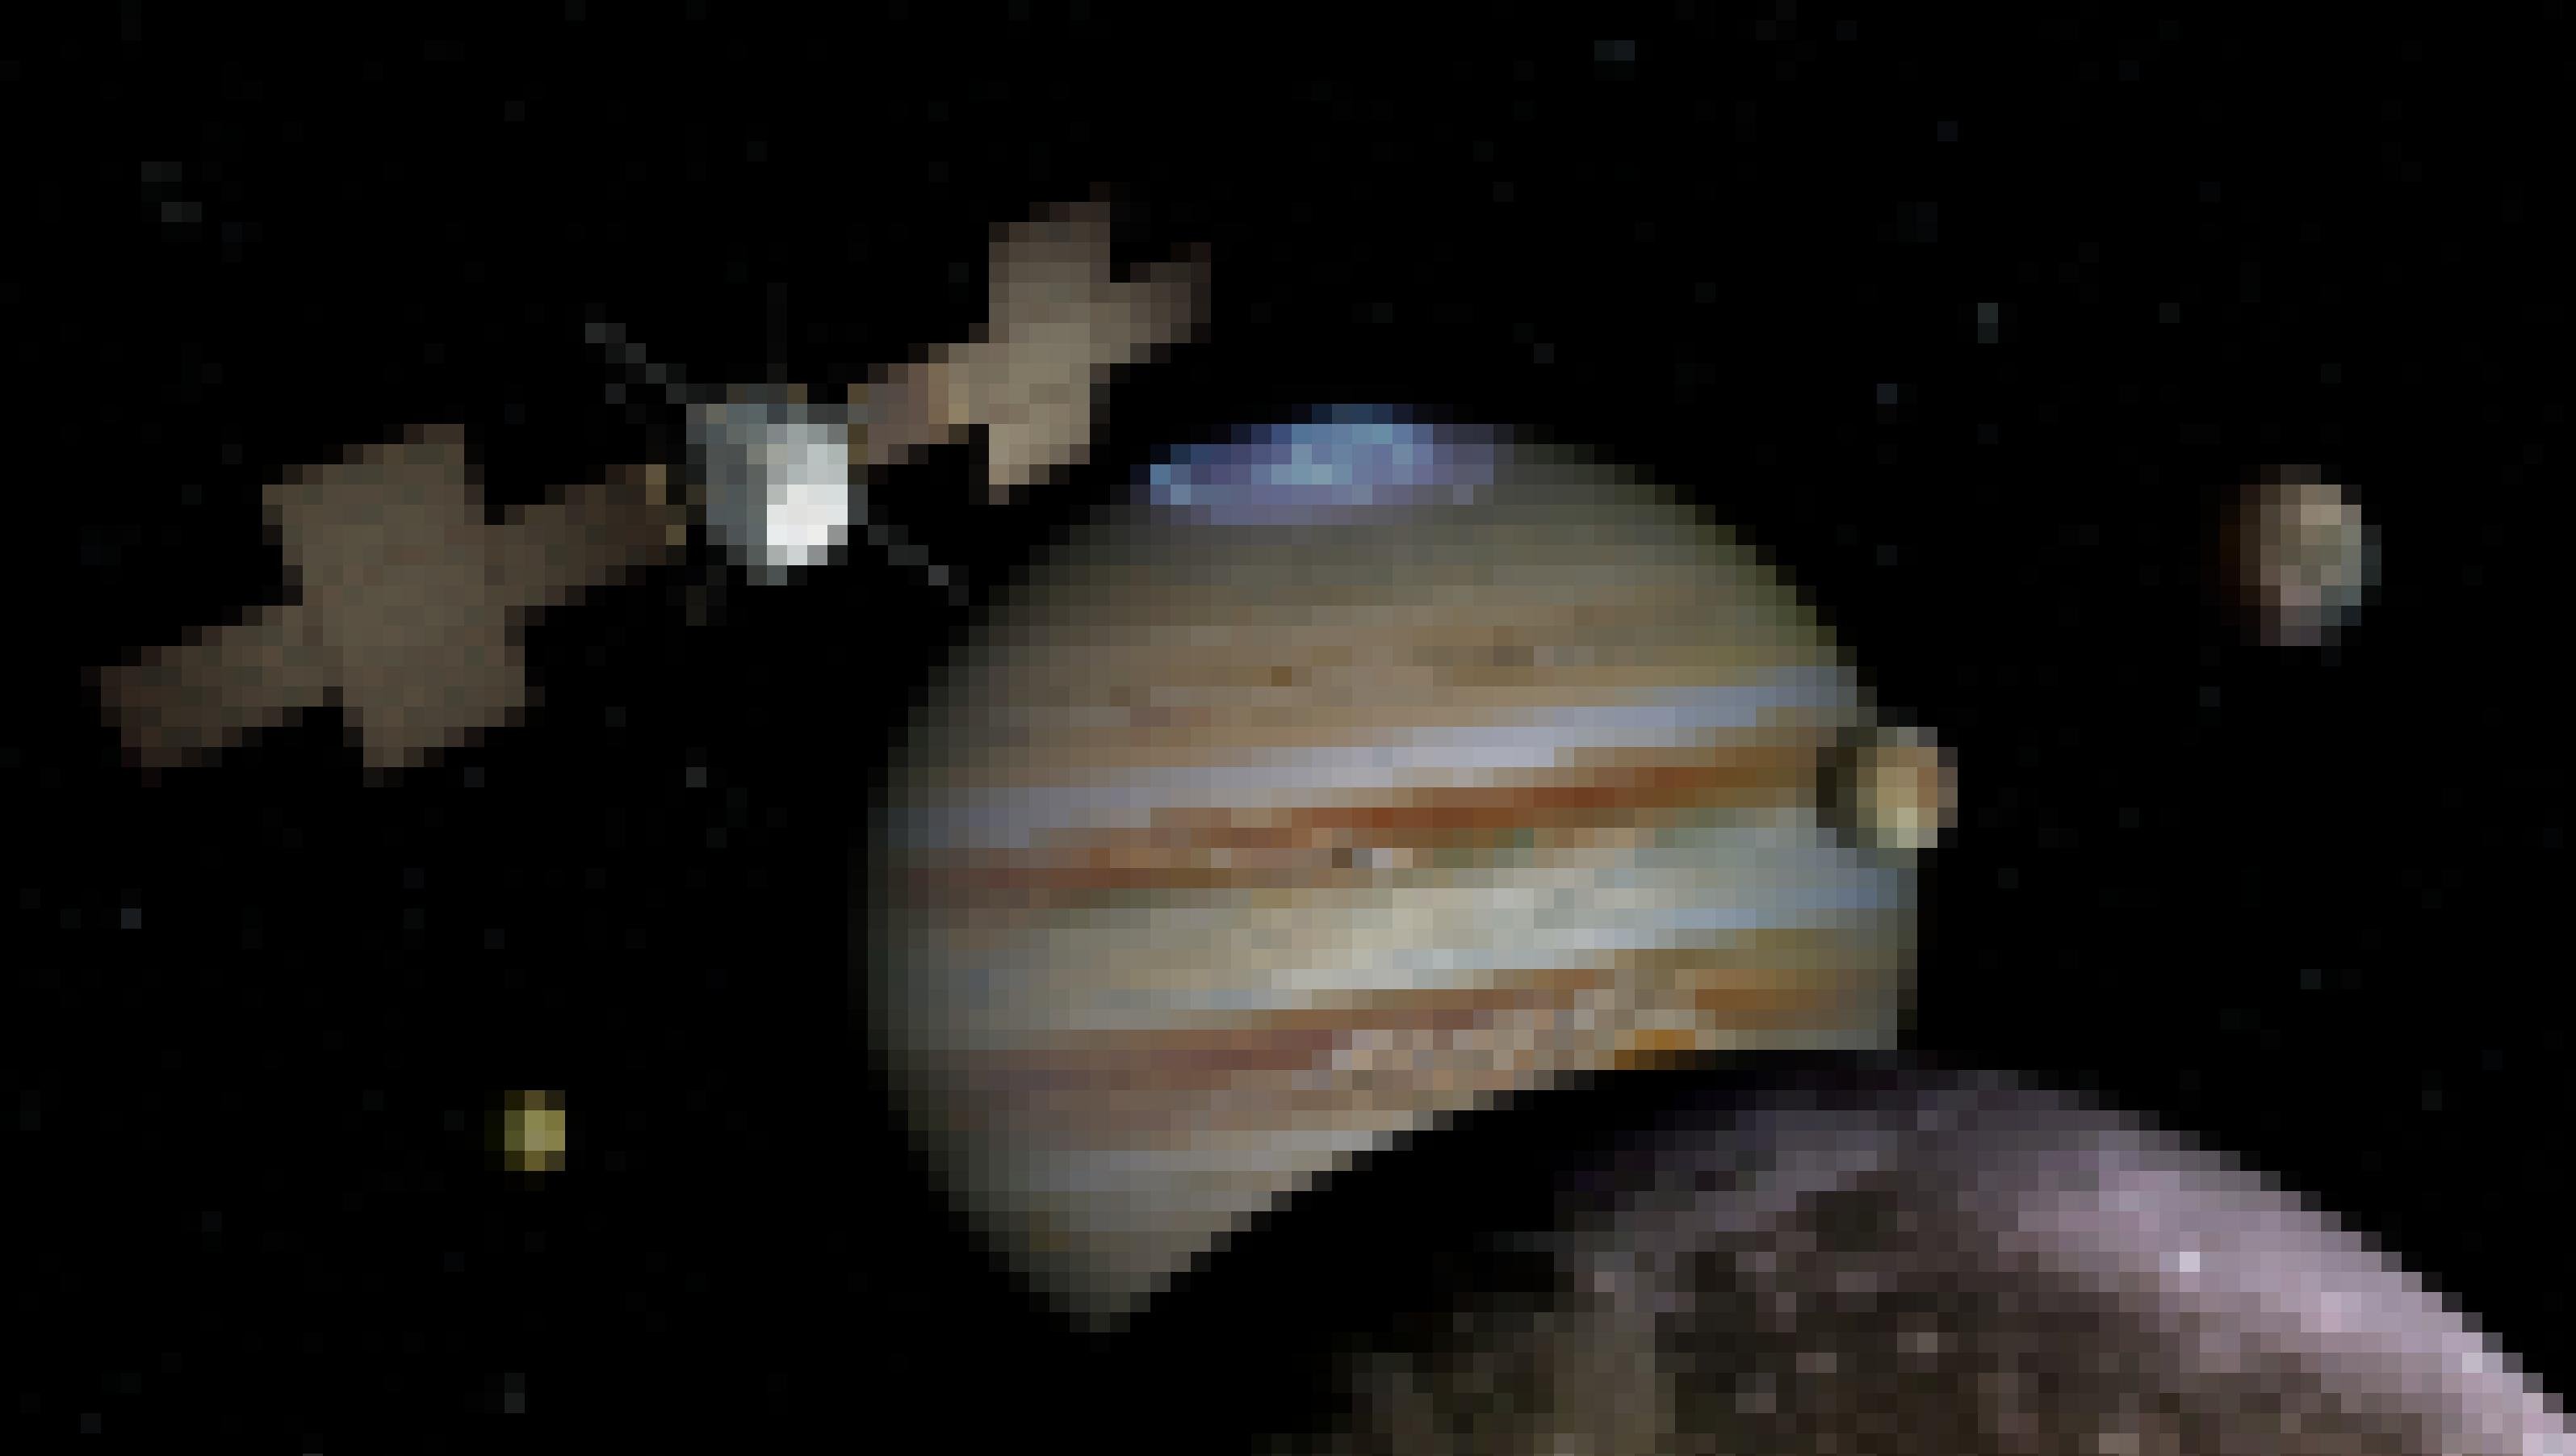 Eine Illustration der Juice-Raumsonde von der europäischen Raumfahrtbehörde ESA am Jupiter und seinen Monden.